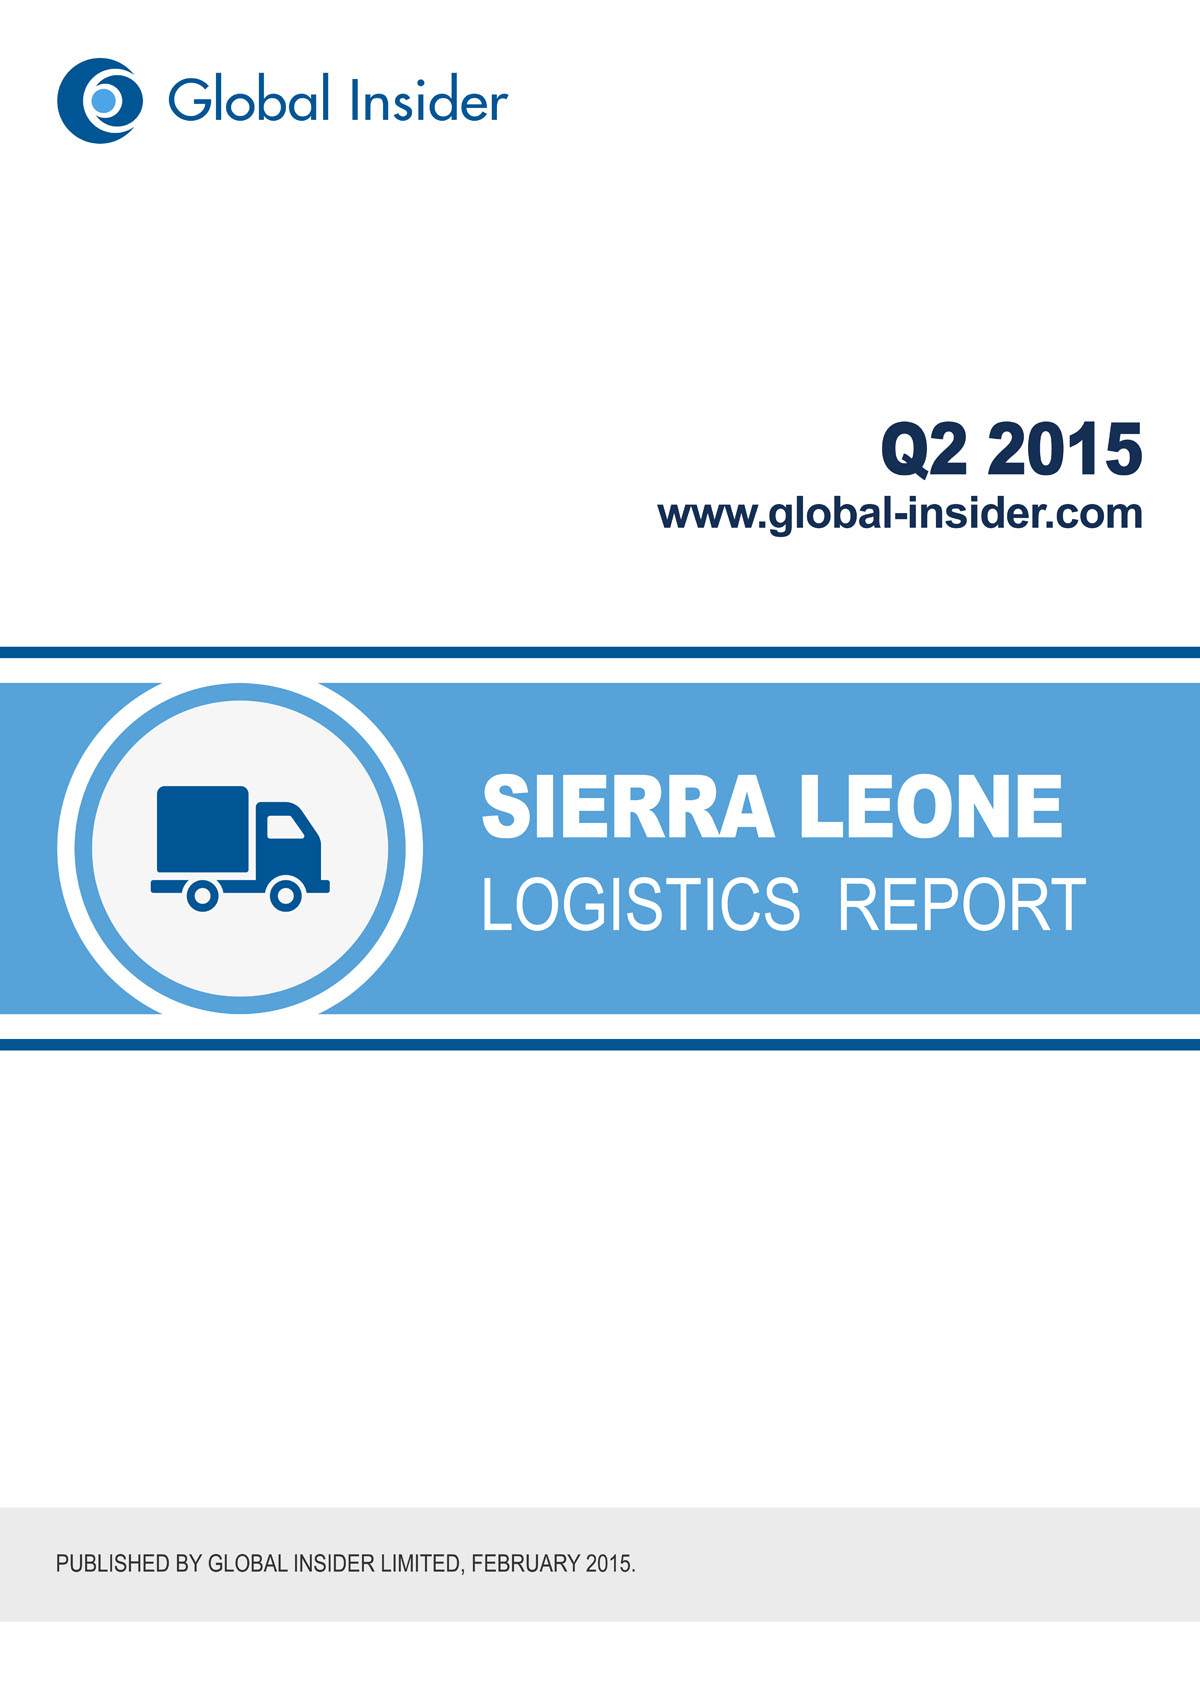 Sierra Leone Logistics Report